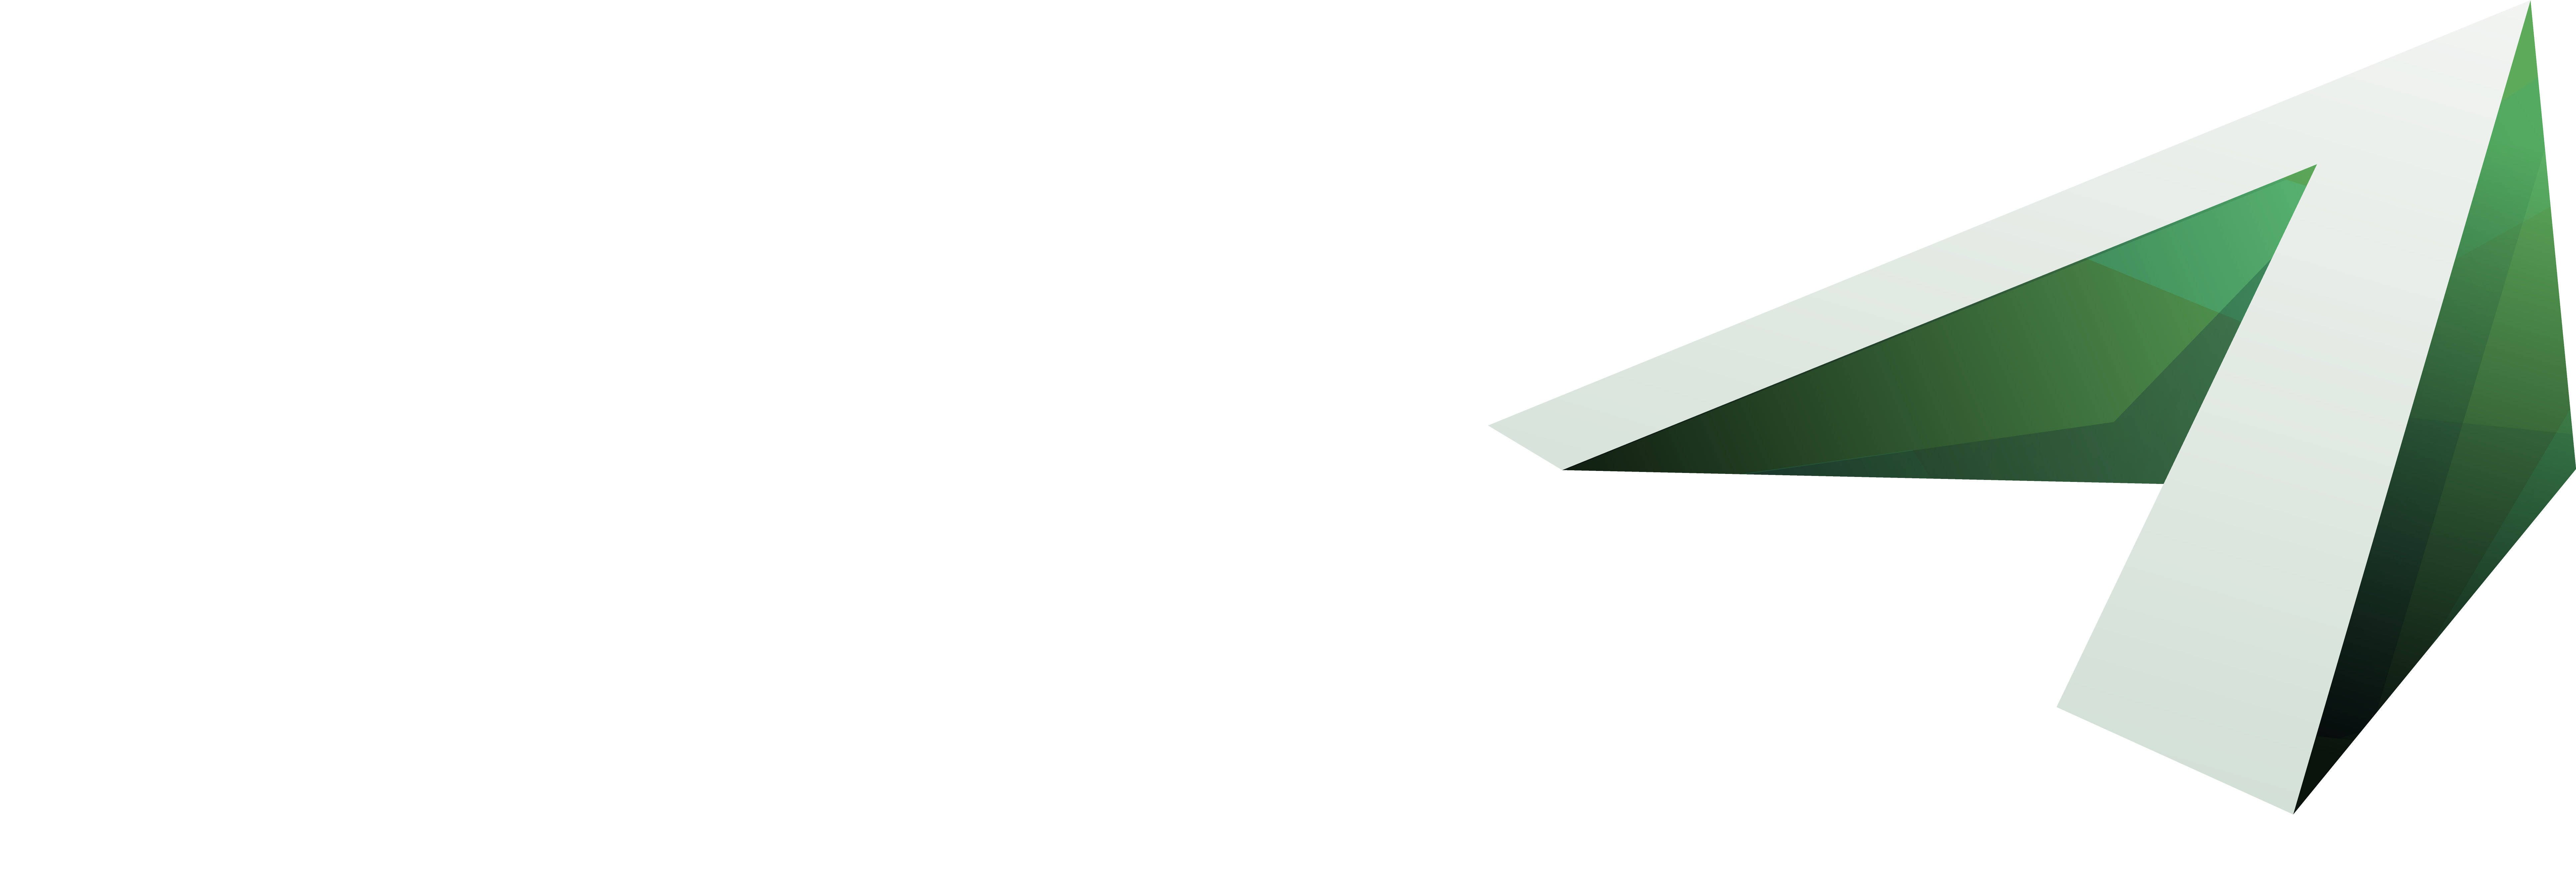 Actoscript logo